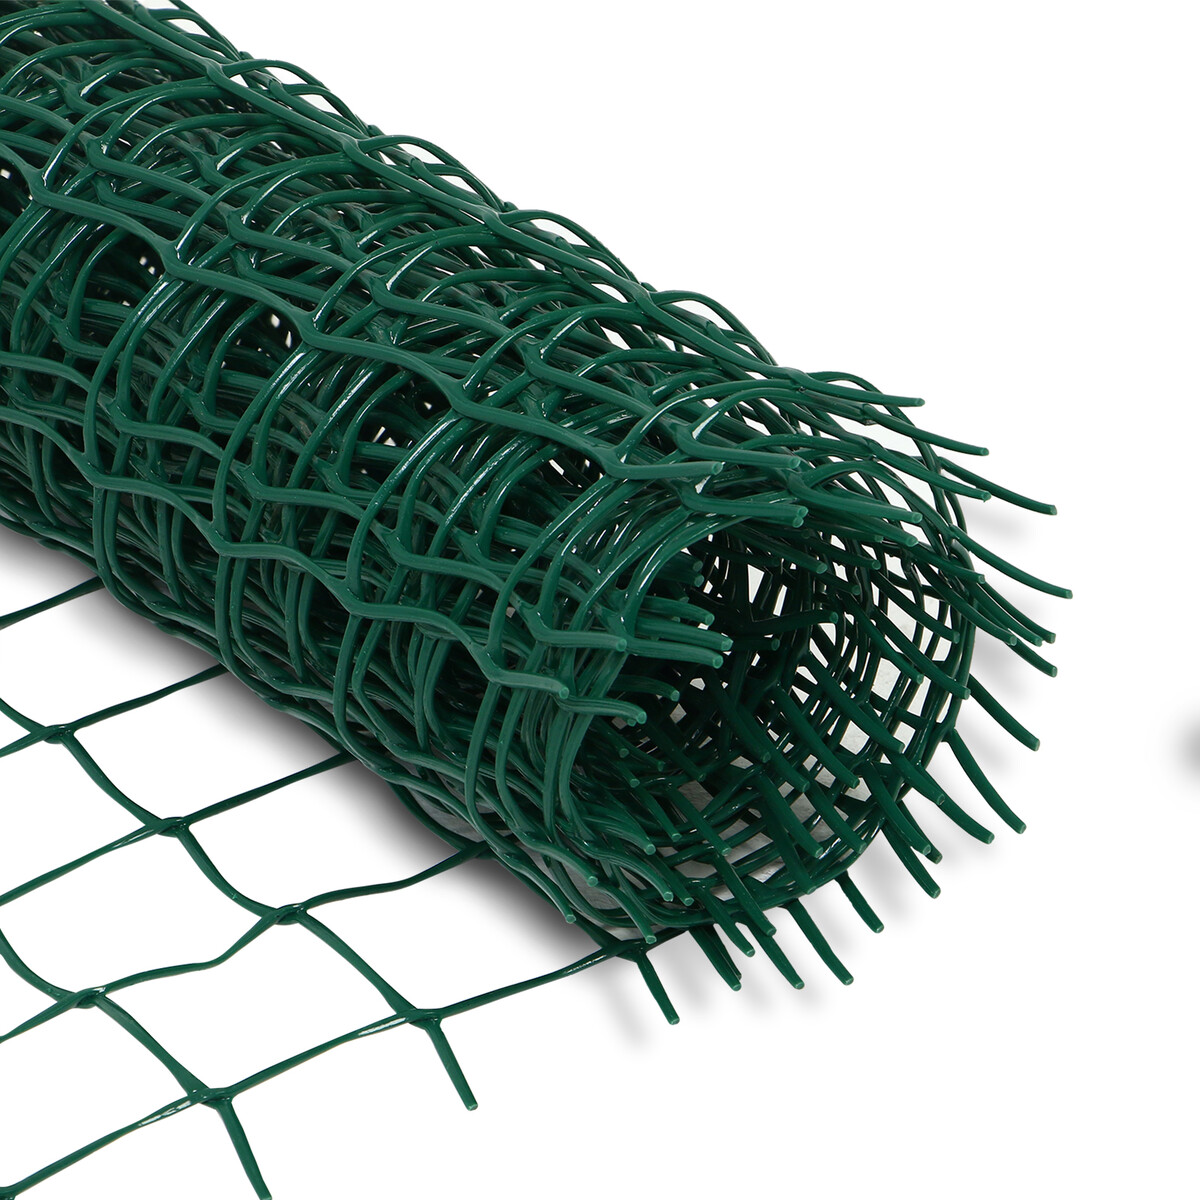 Сетка садовая, 0,5 × 5 м, ячейка квадрат 50 × 50 мм, пластиковая, зеленая, greengo сетка затеняющая полиэтилен 300х500 см с клипсой 55% зеленая